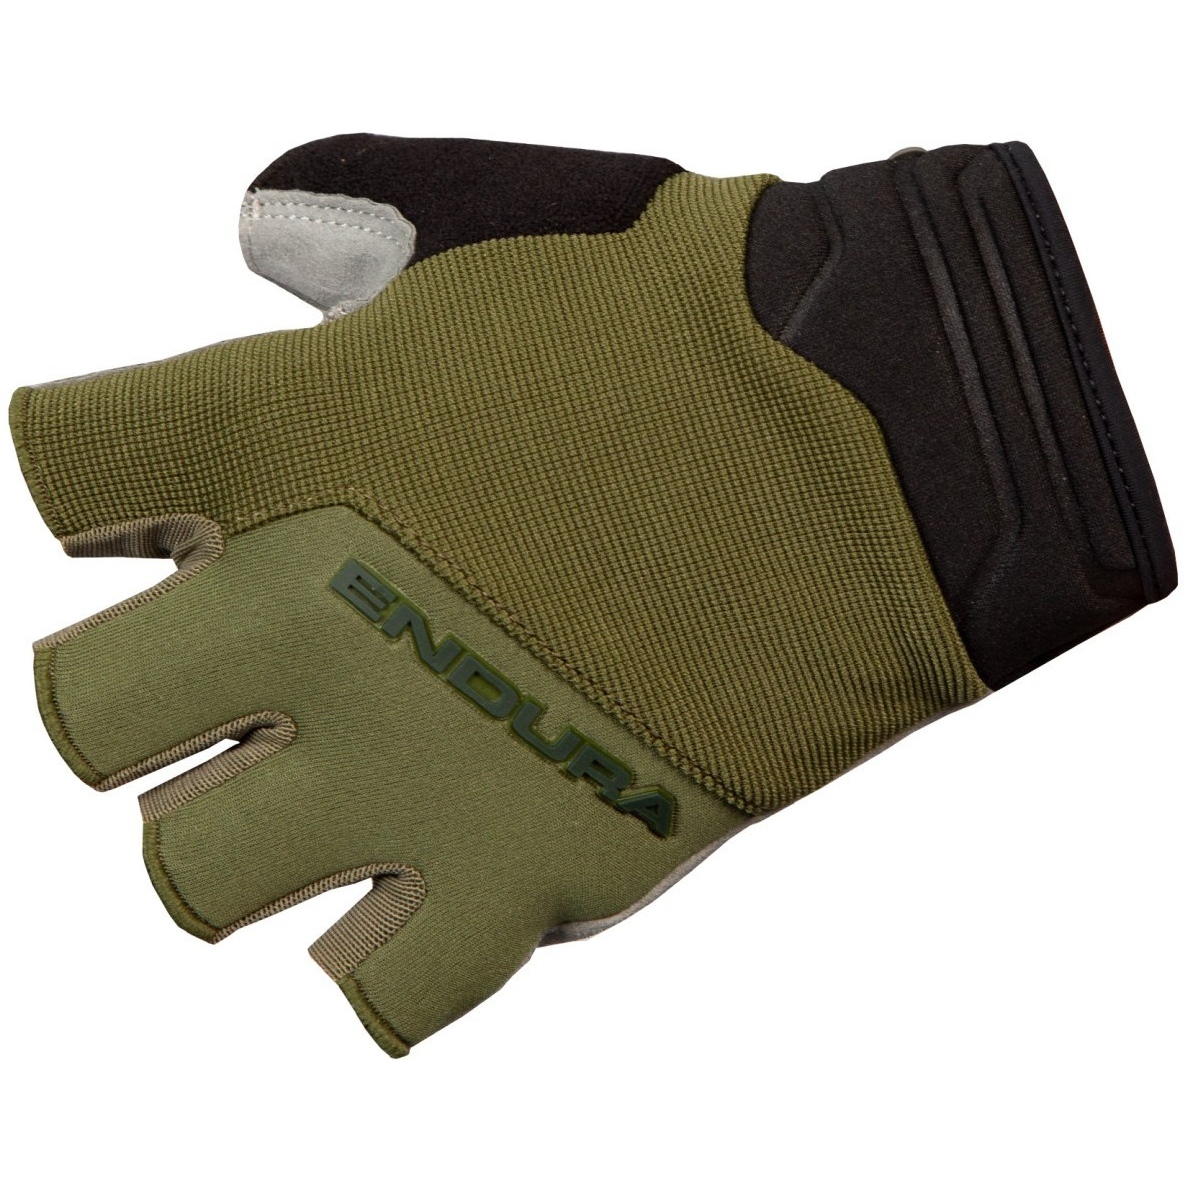 Produktbild von Endura Hummvee Plus II Kurzfinger-Handschuhe - olivgrün